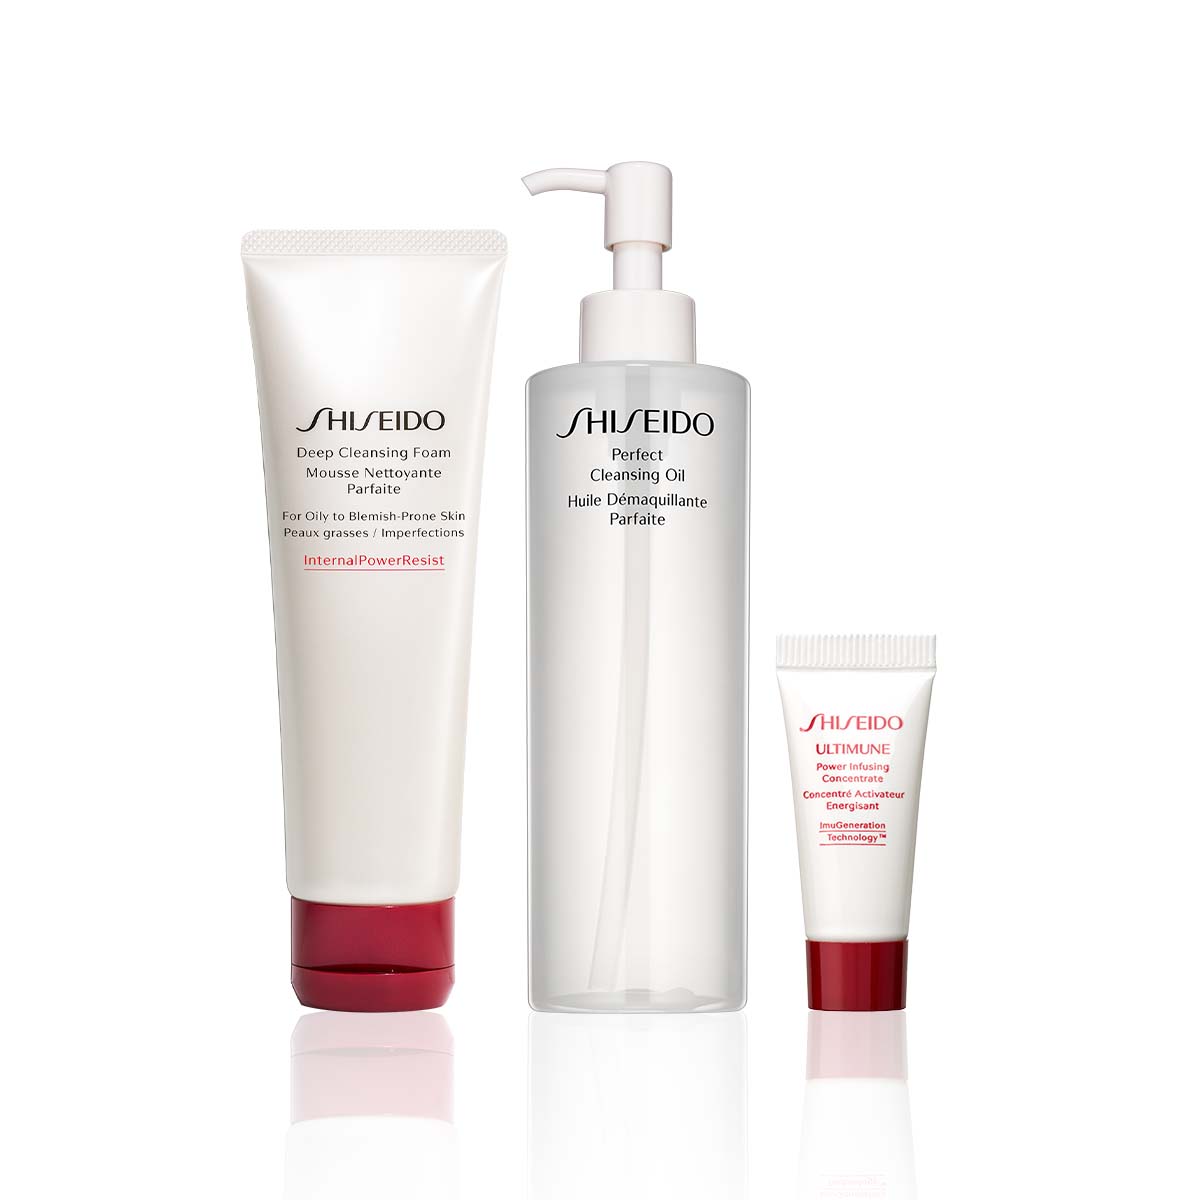 Shiseido Double Cleanse Çift Aşamali Temizleyici Set - Özel Fiyatlı Cilt  Bakım Setleri | Makyaj Trendi